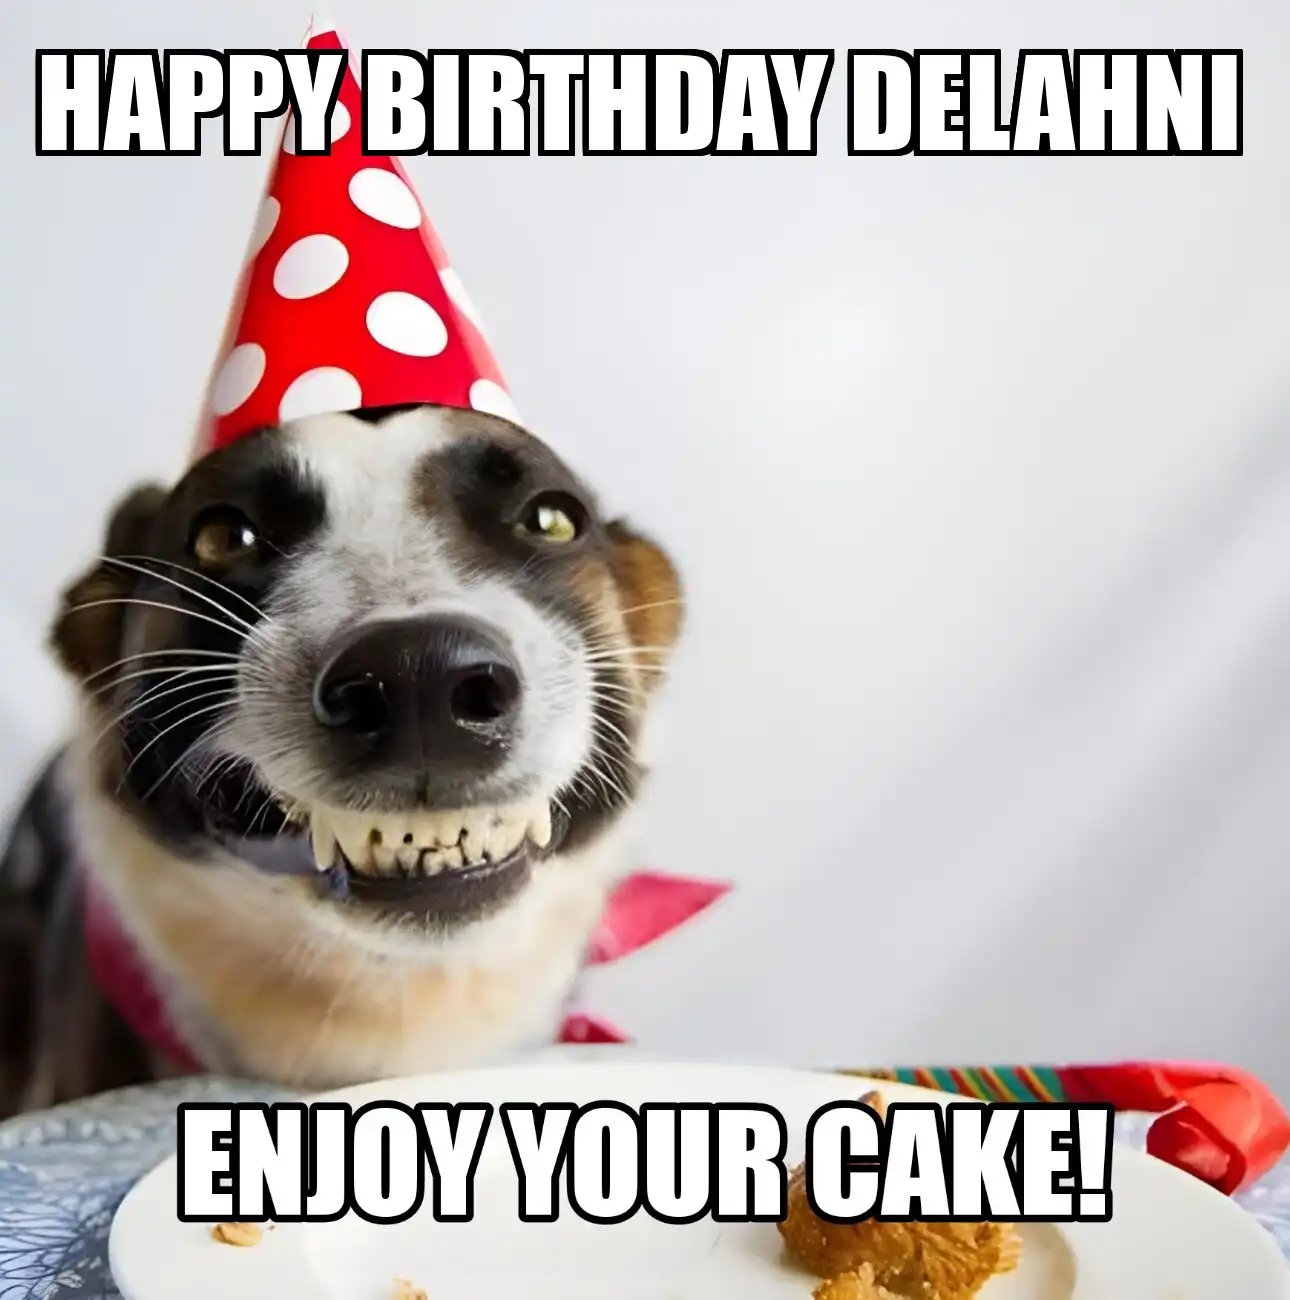 Happy Birthday Delahni Enjoy Your Cake Dog Meme